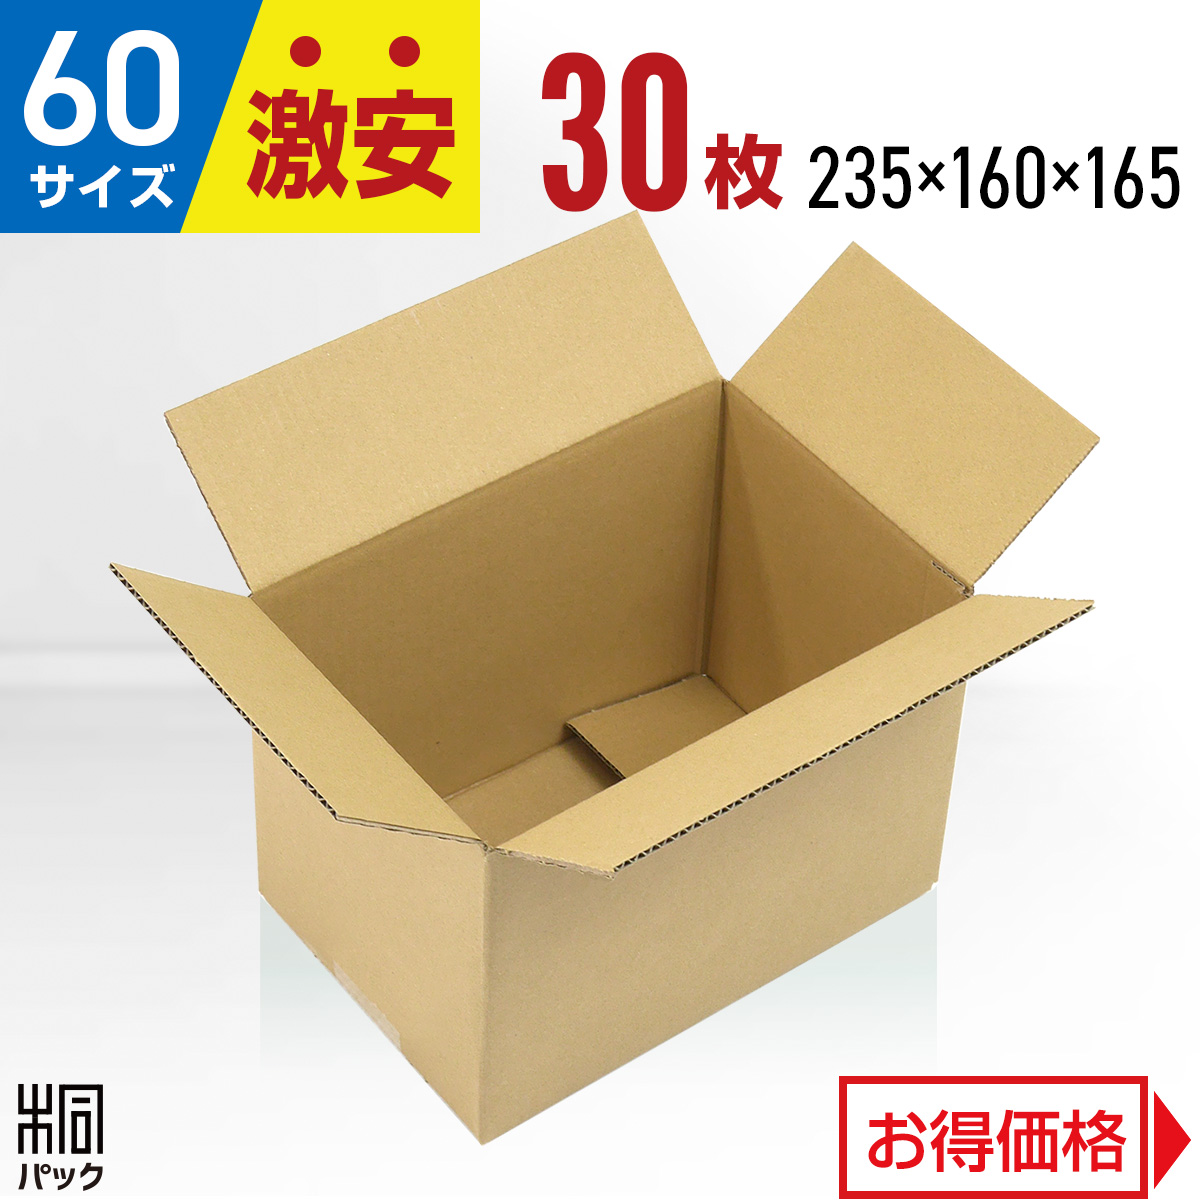 【楽天市場】激安 ダンボール 箱 60サイズ A5 (235×160×165) 100枚